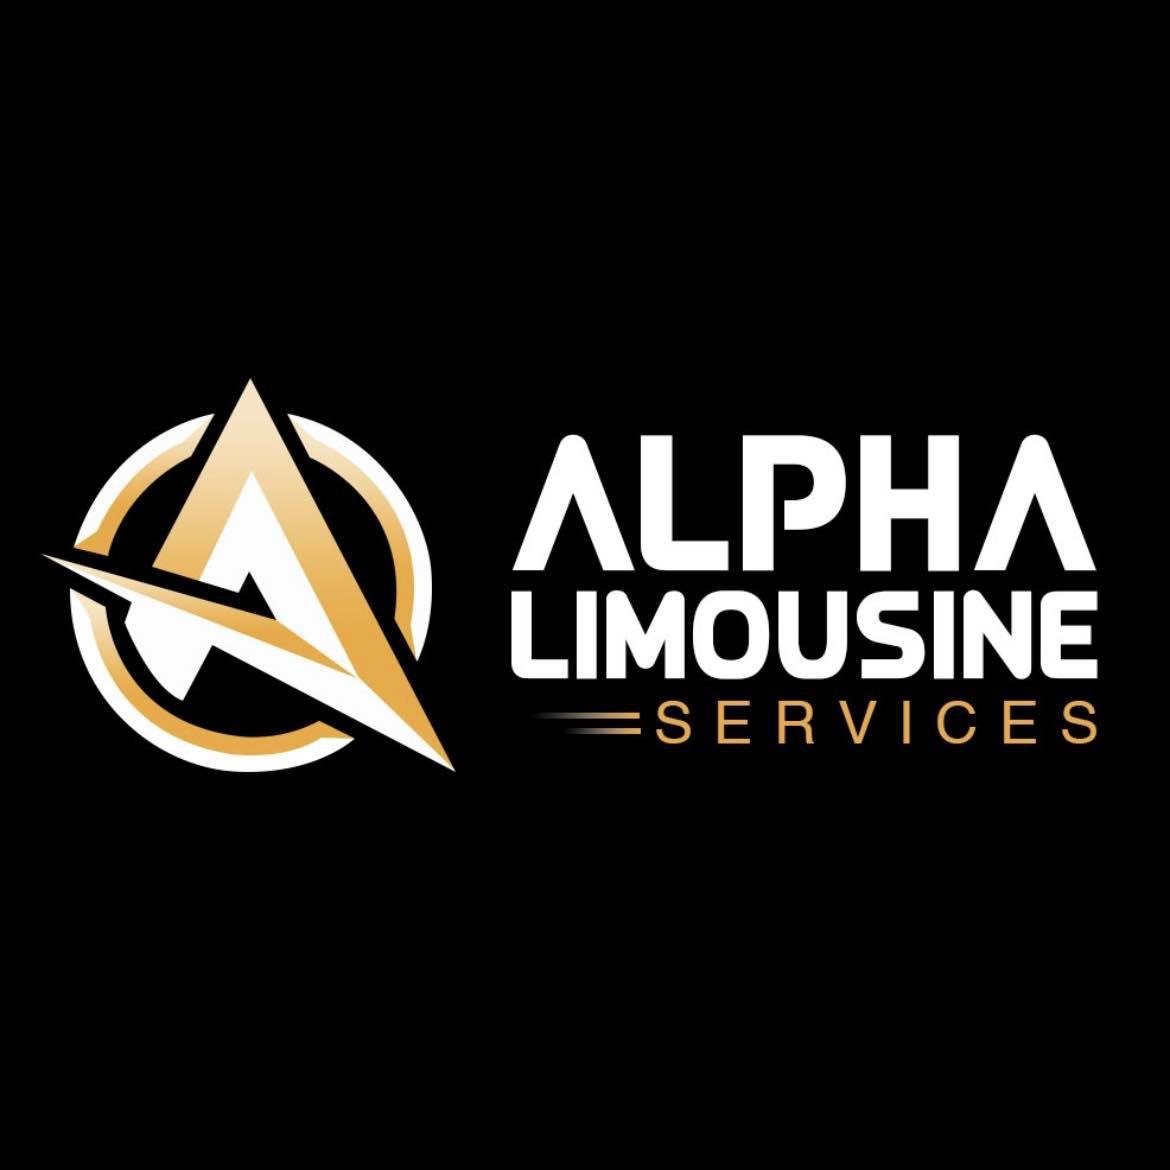 Alpha Limousine Services